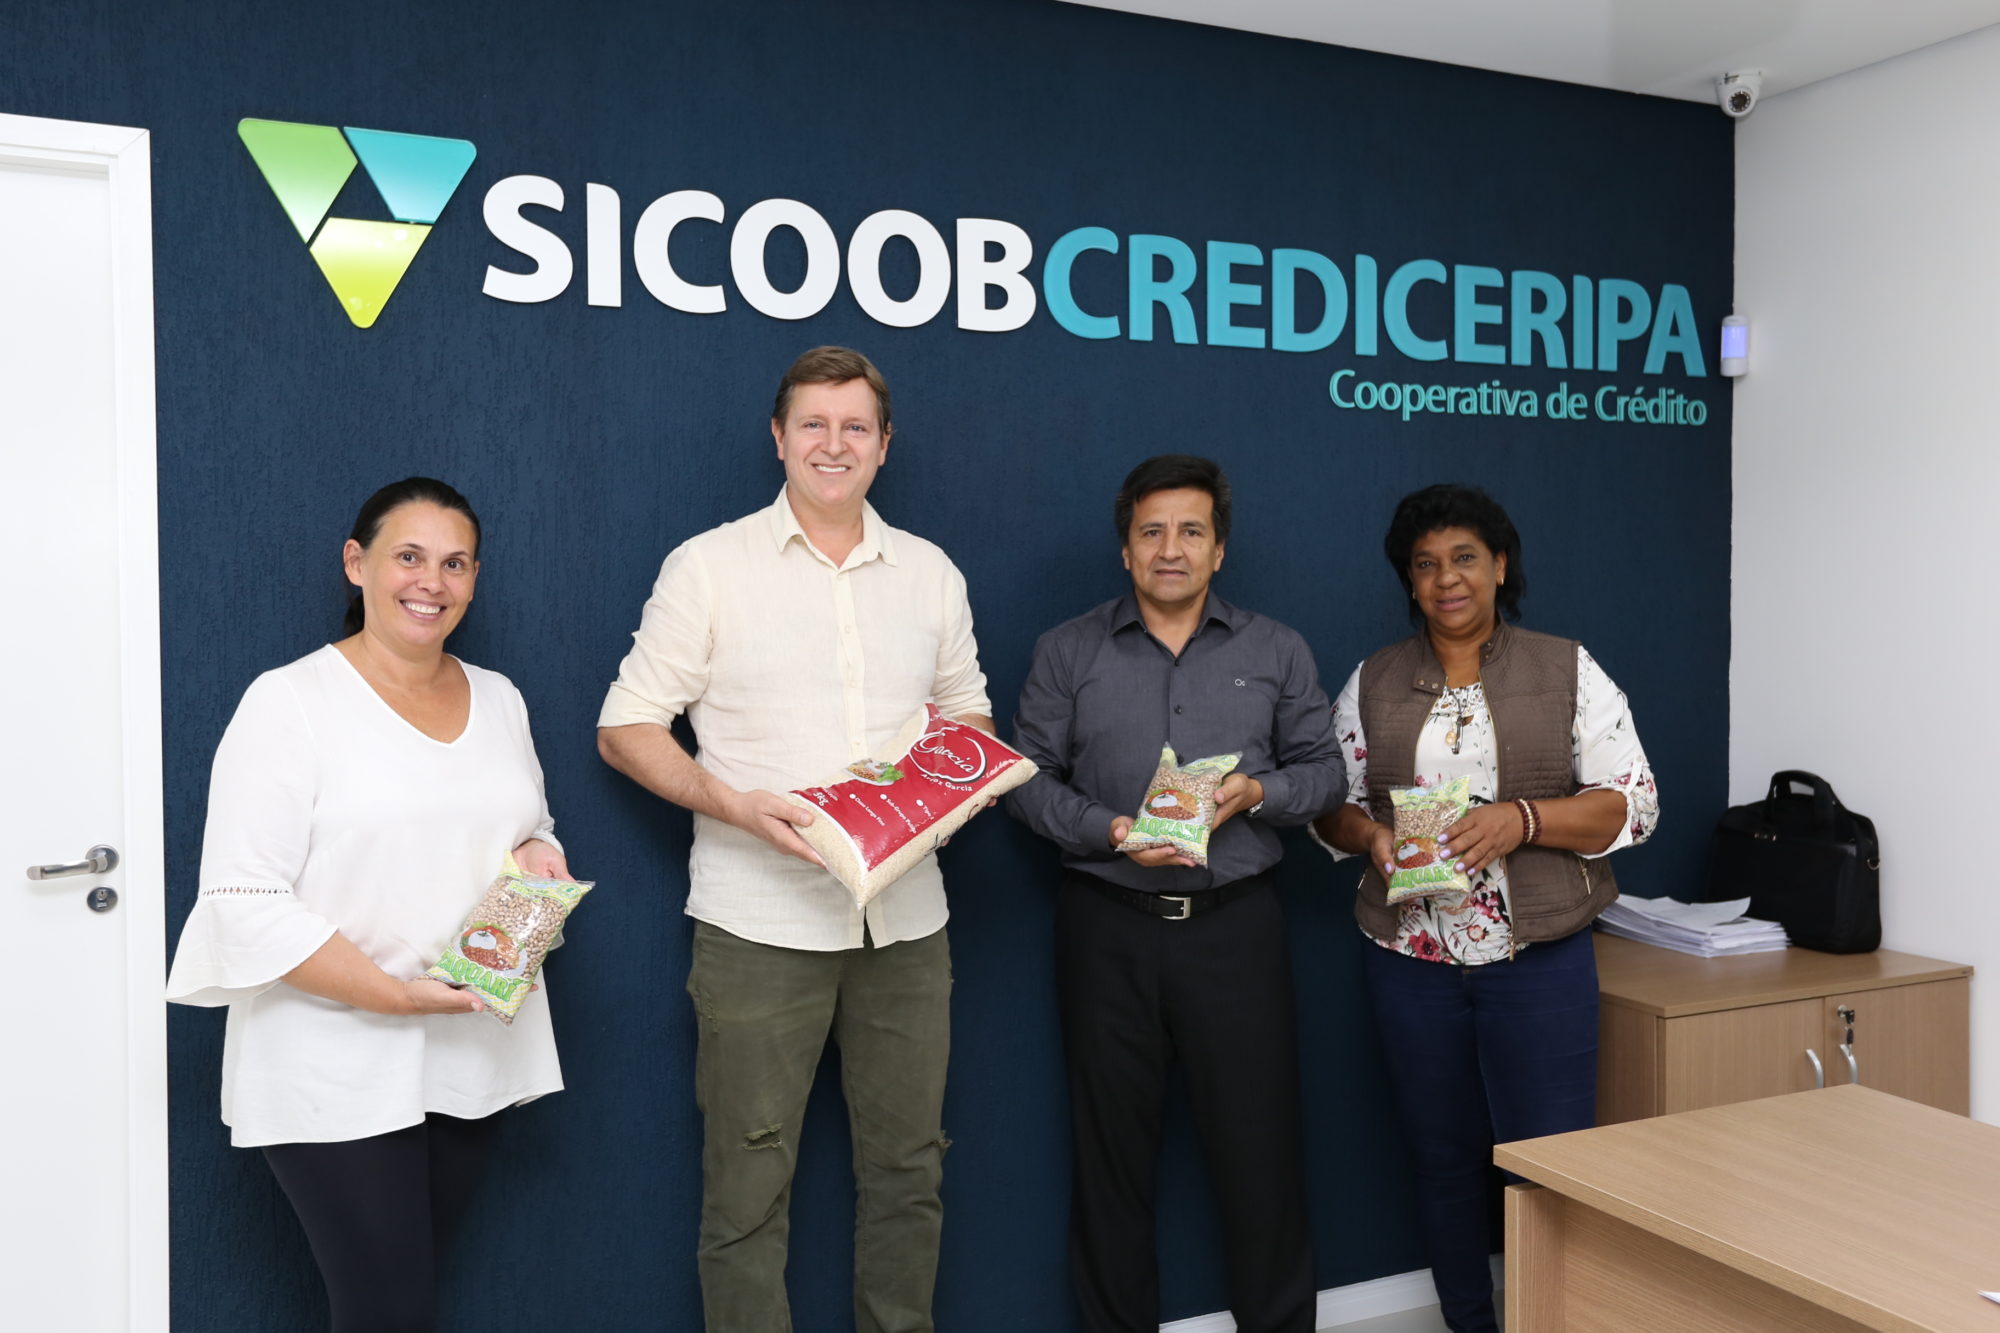 Coronavírus: Prefeitura de Itararé recebe doação de 780 quilos de alimento da Sicoob Crediceripa